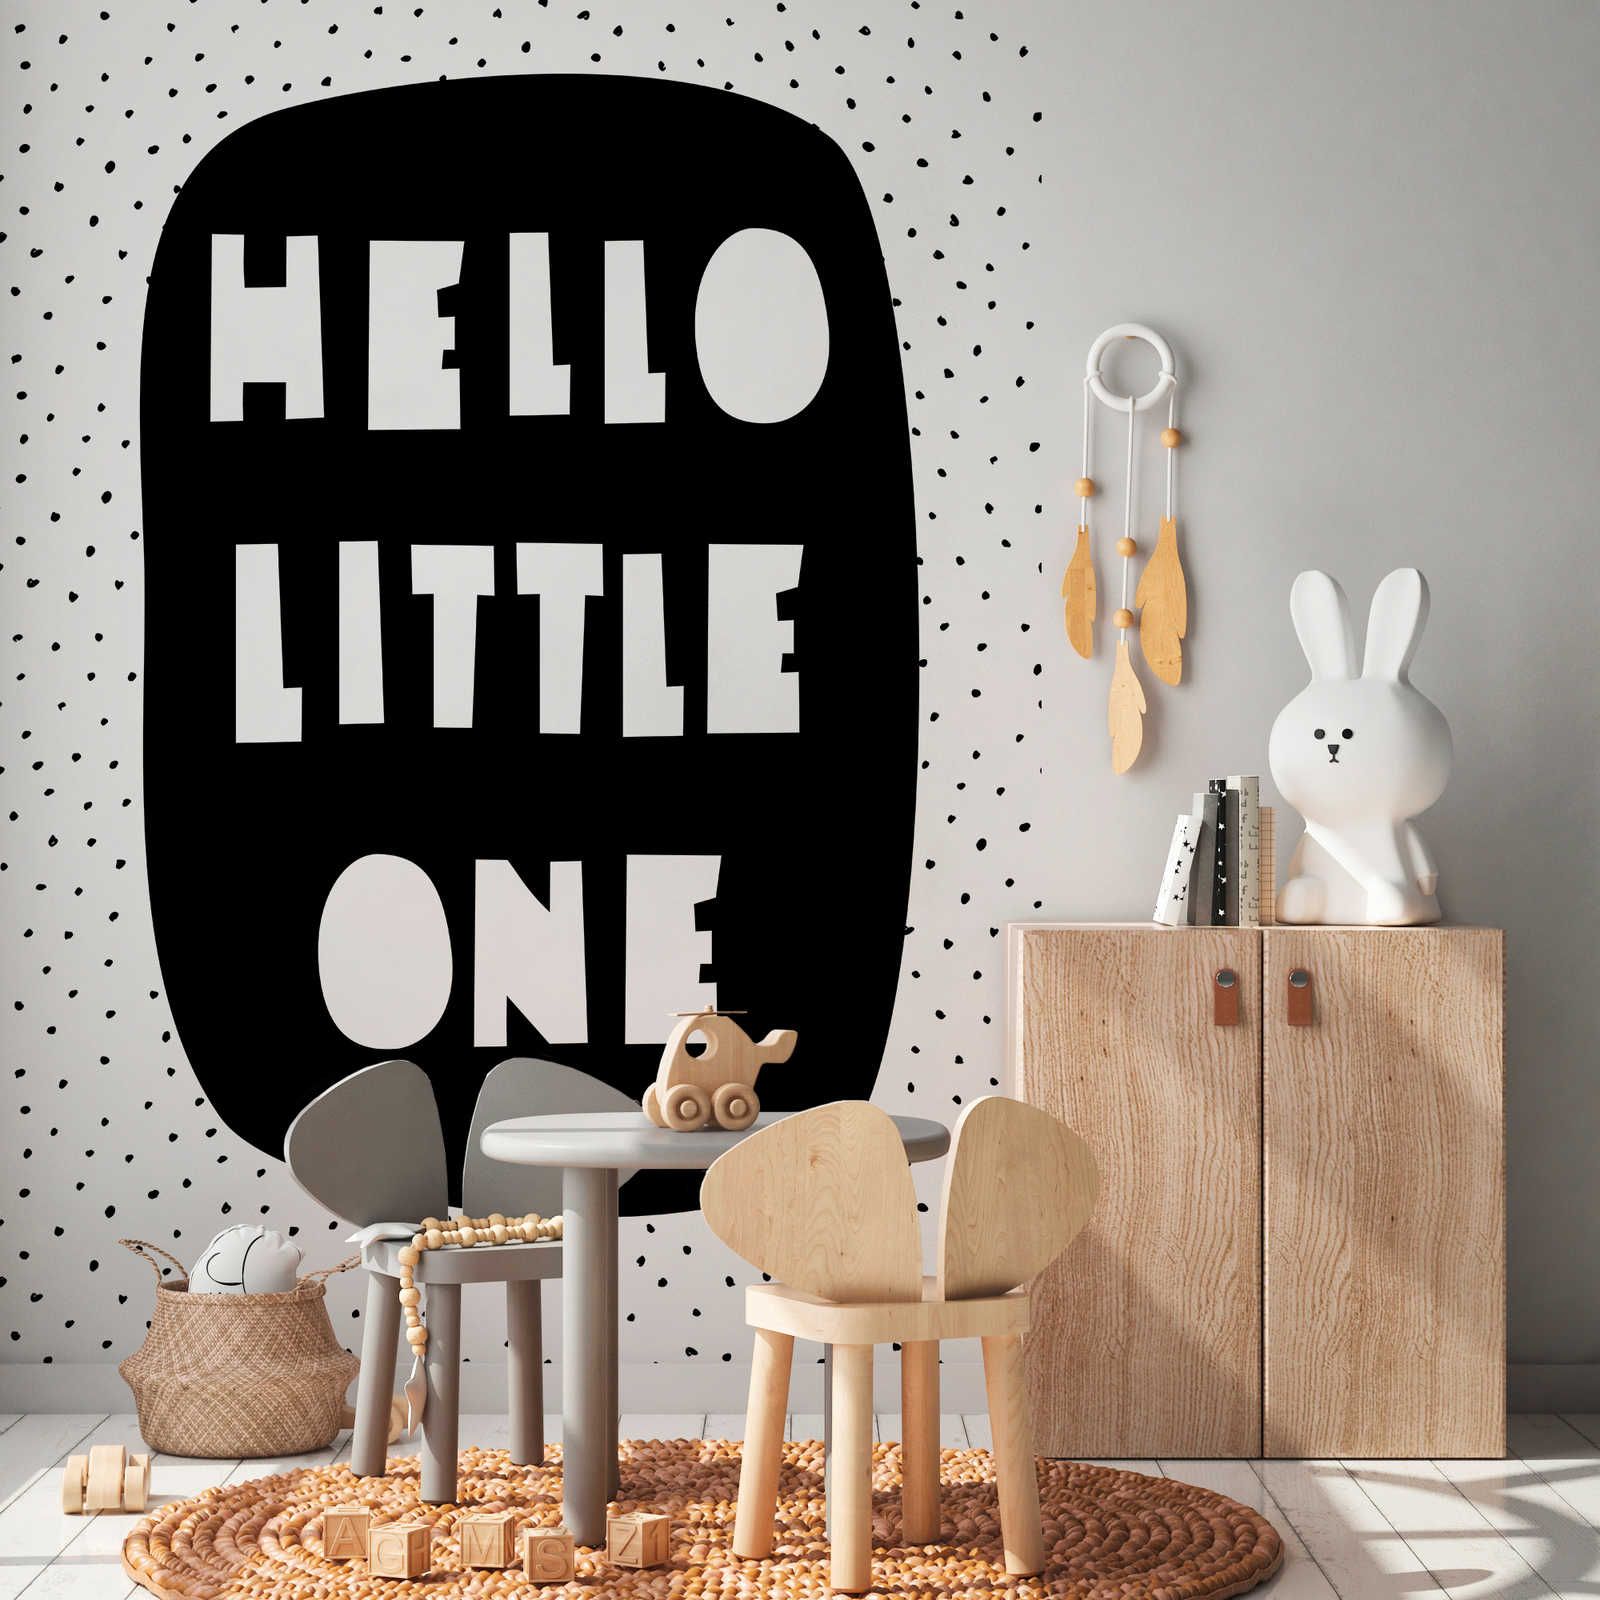 Fotomurali per la camera dei bambini con scritta "Hello Little One" - tessuto non tessuto testurizzato
